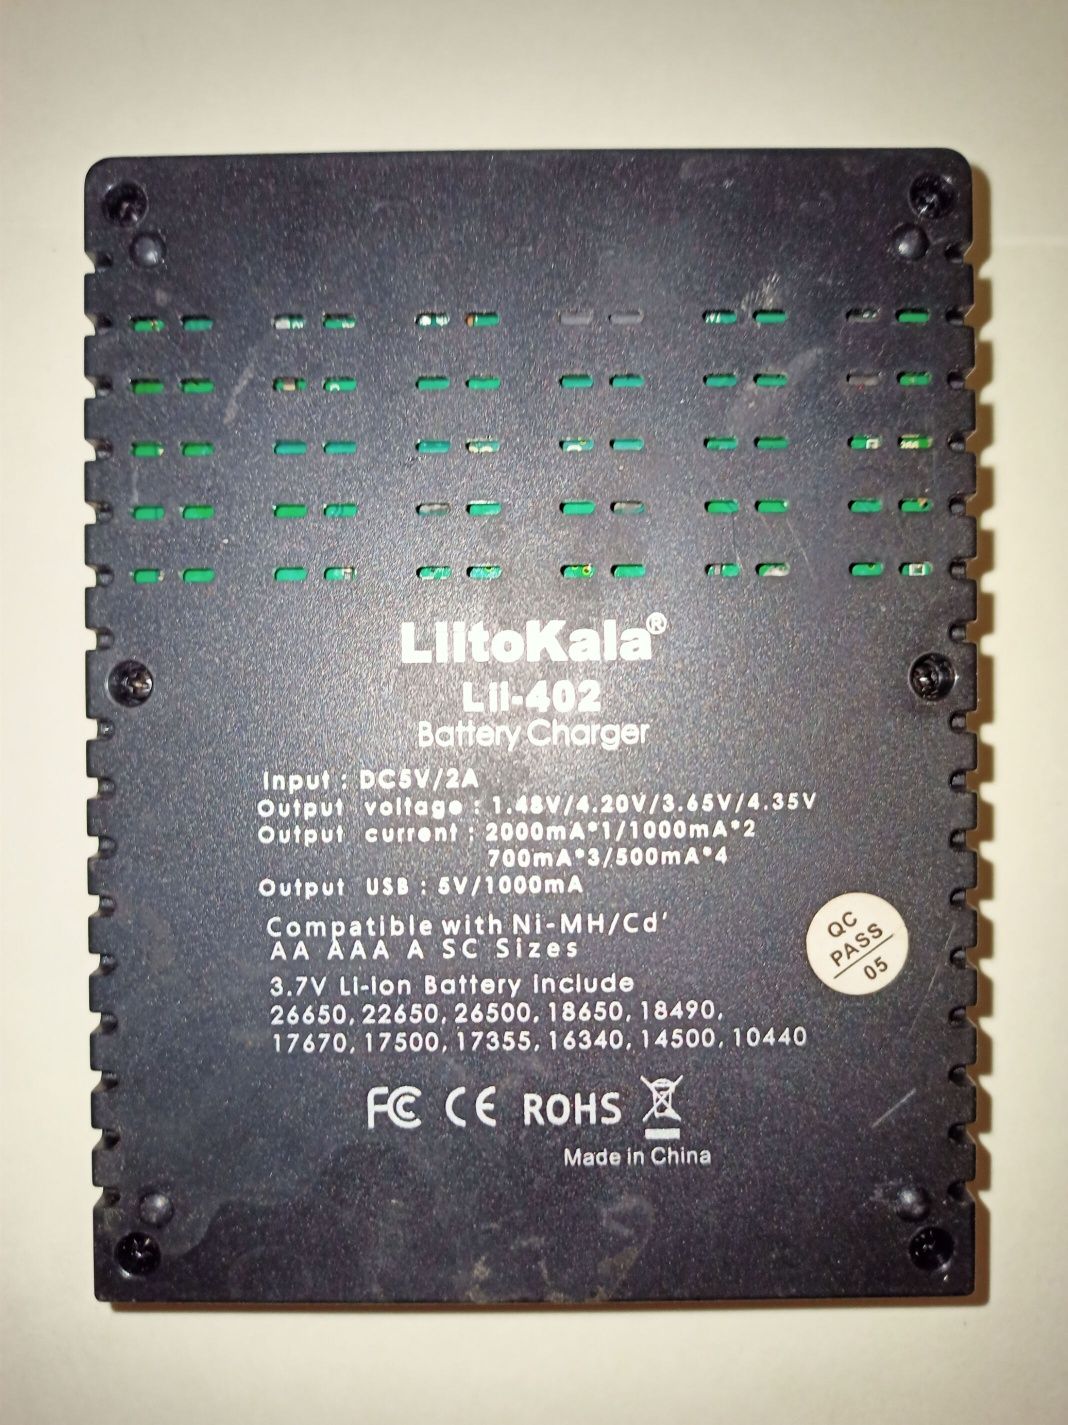 Продам зарядное устройство  Liito-lii402